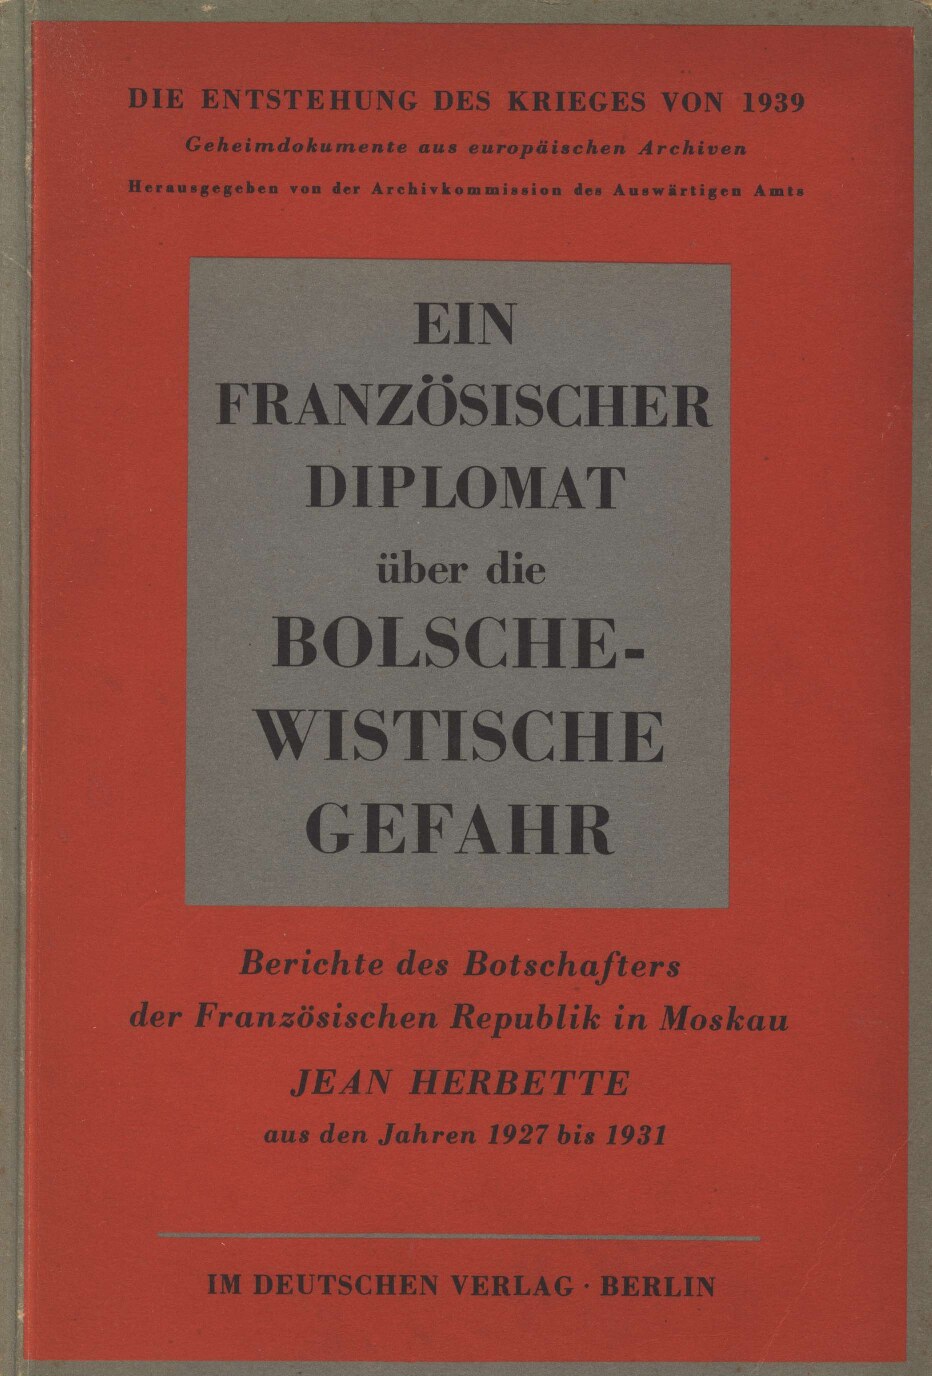 Ein französischer Diplomat über die bolschewistische Gefahr (1943, 186 S., Scan)